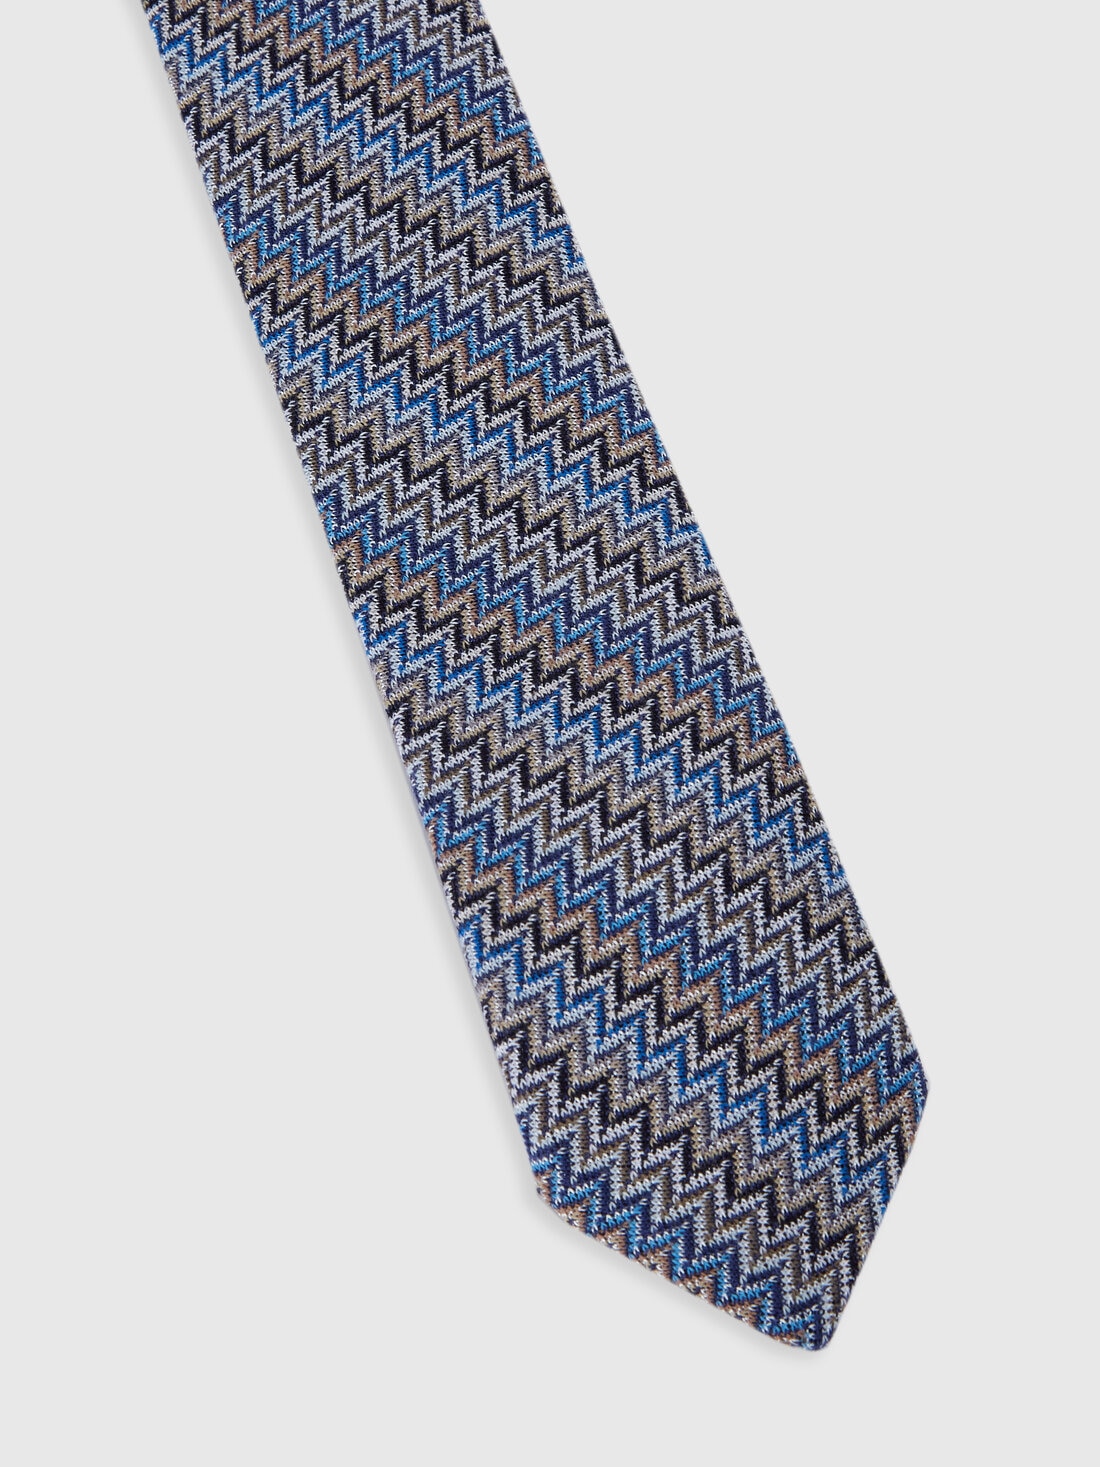 Cravatta in viscosa e cotone zig zag, Multicolore  - 8053147141855 - 1